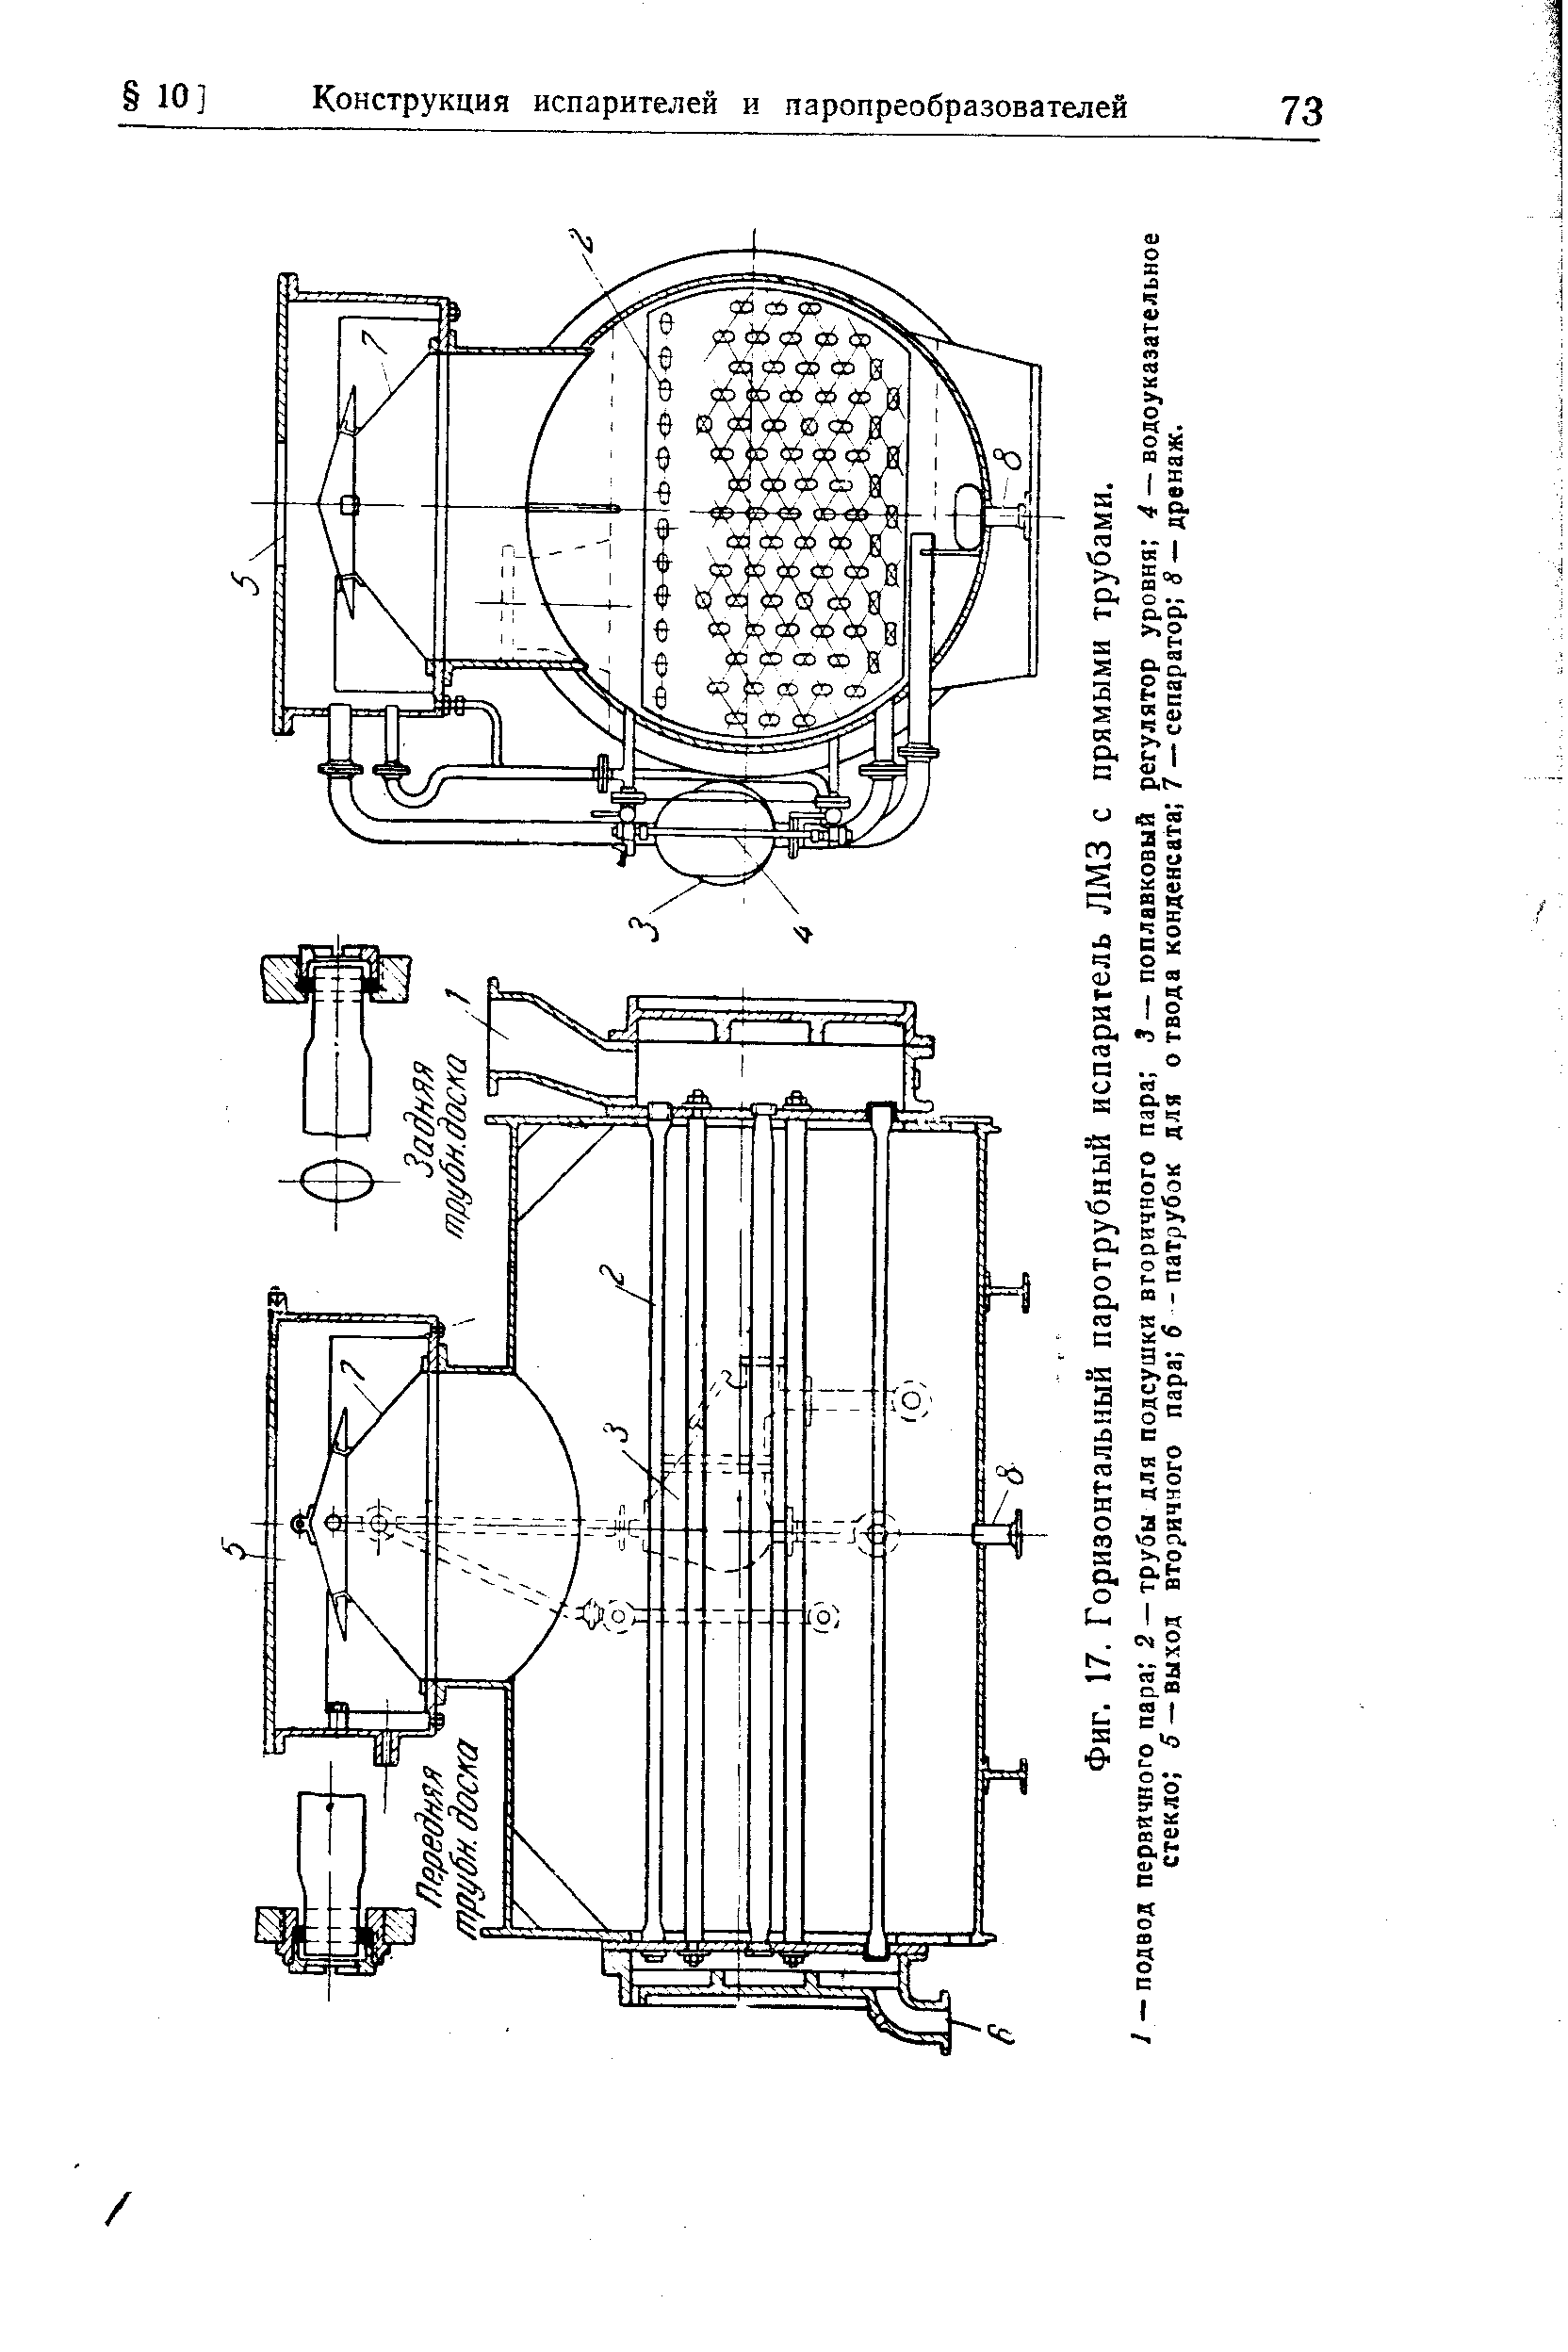 Фиг. 17. Горизонтальный паротрубный испаритель ЛМЗ с прямыми трубами.
